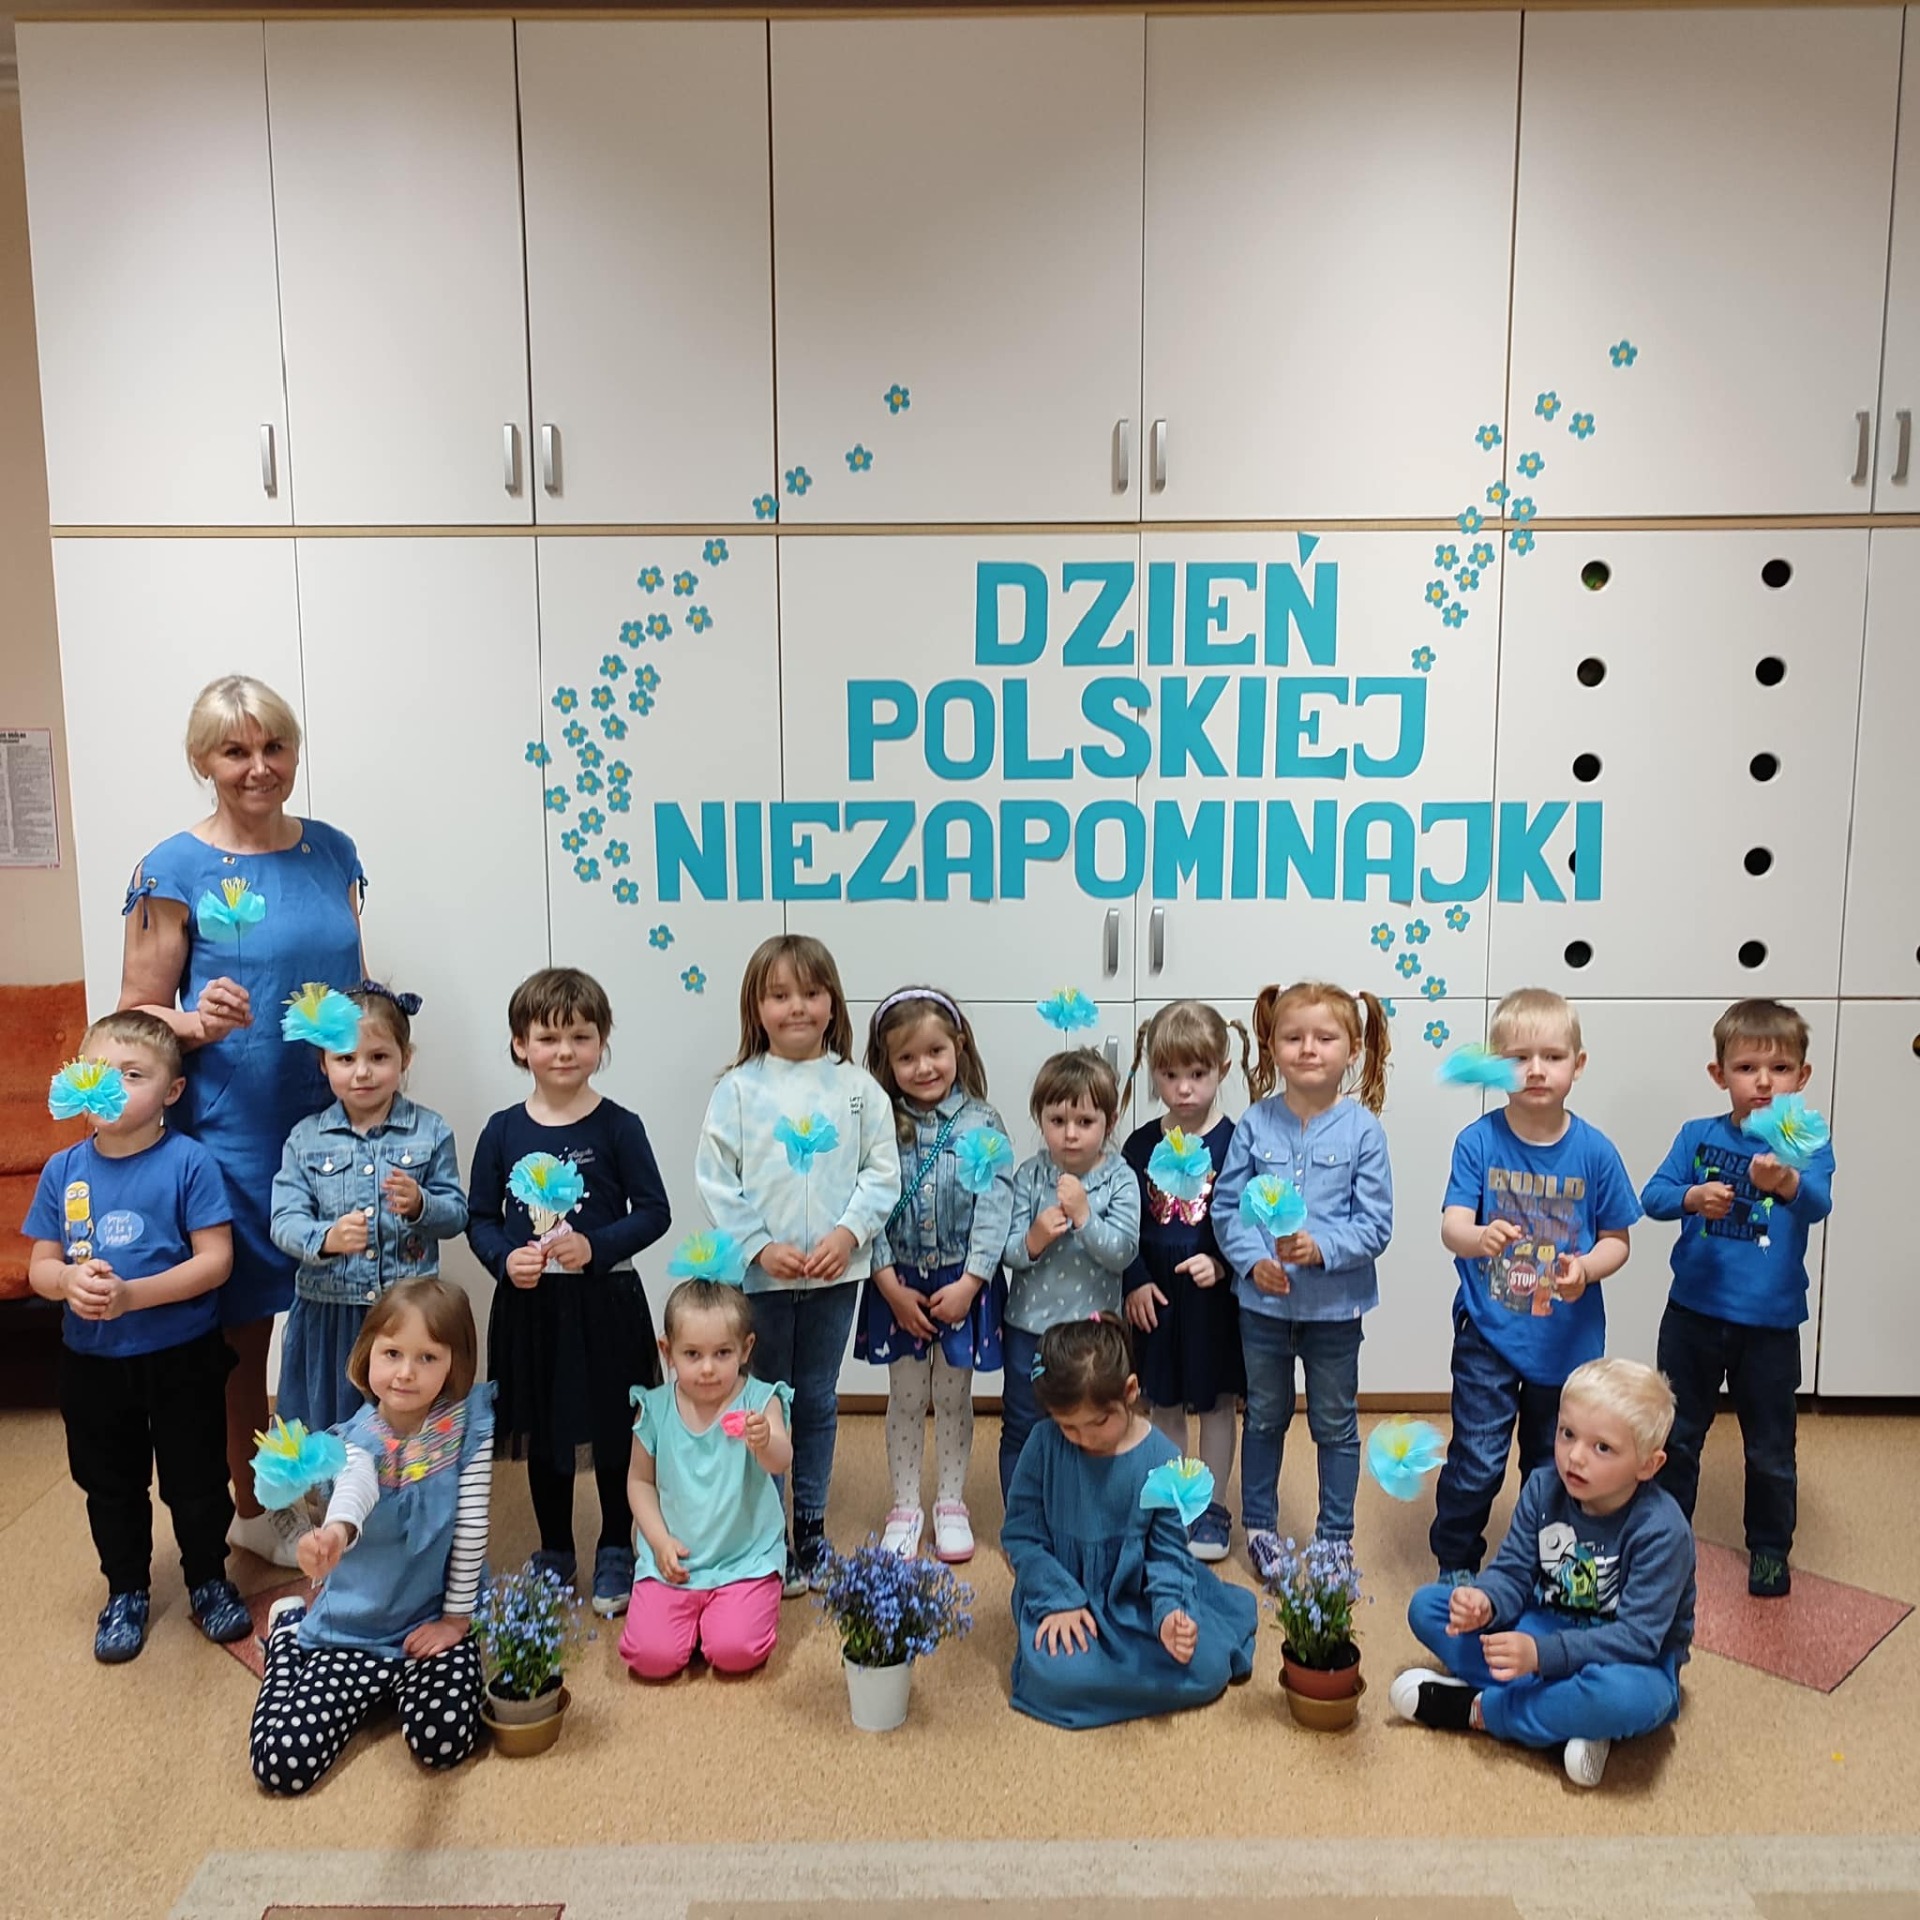 Dzień Polskiej Niezapominajki w Przedszkolu w Twardej - Obrazek 1